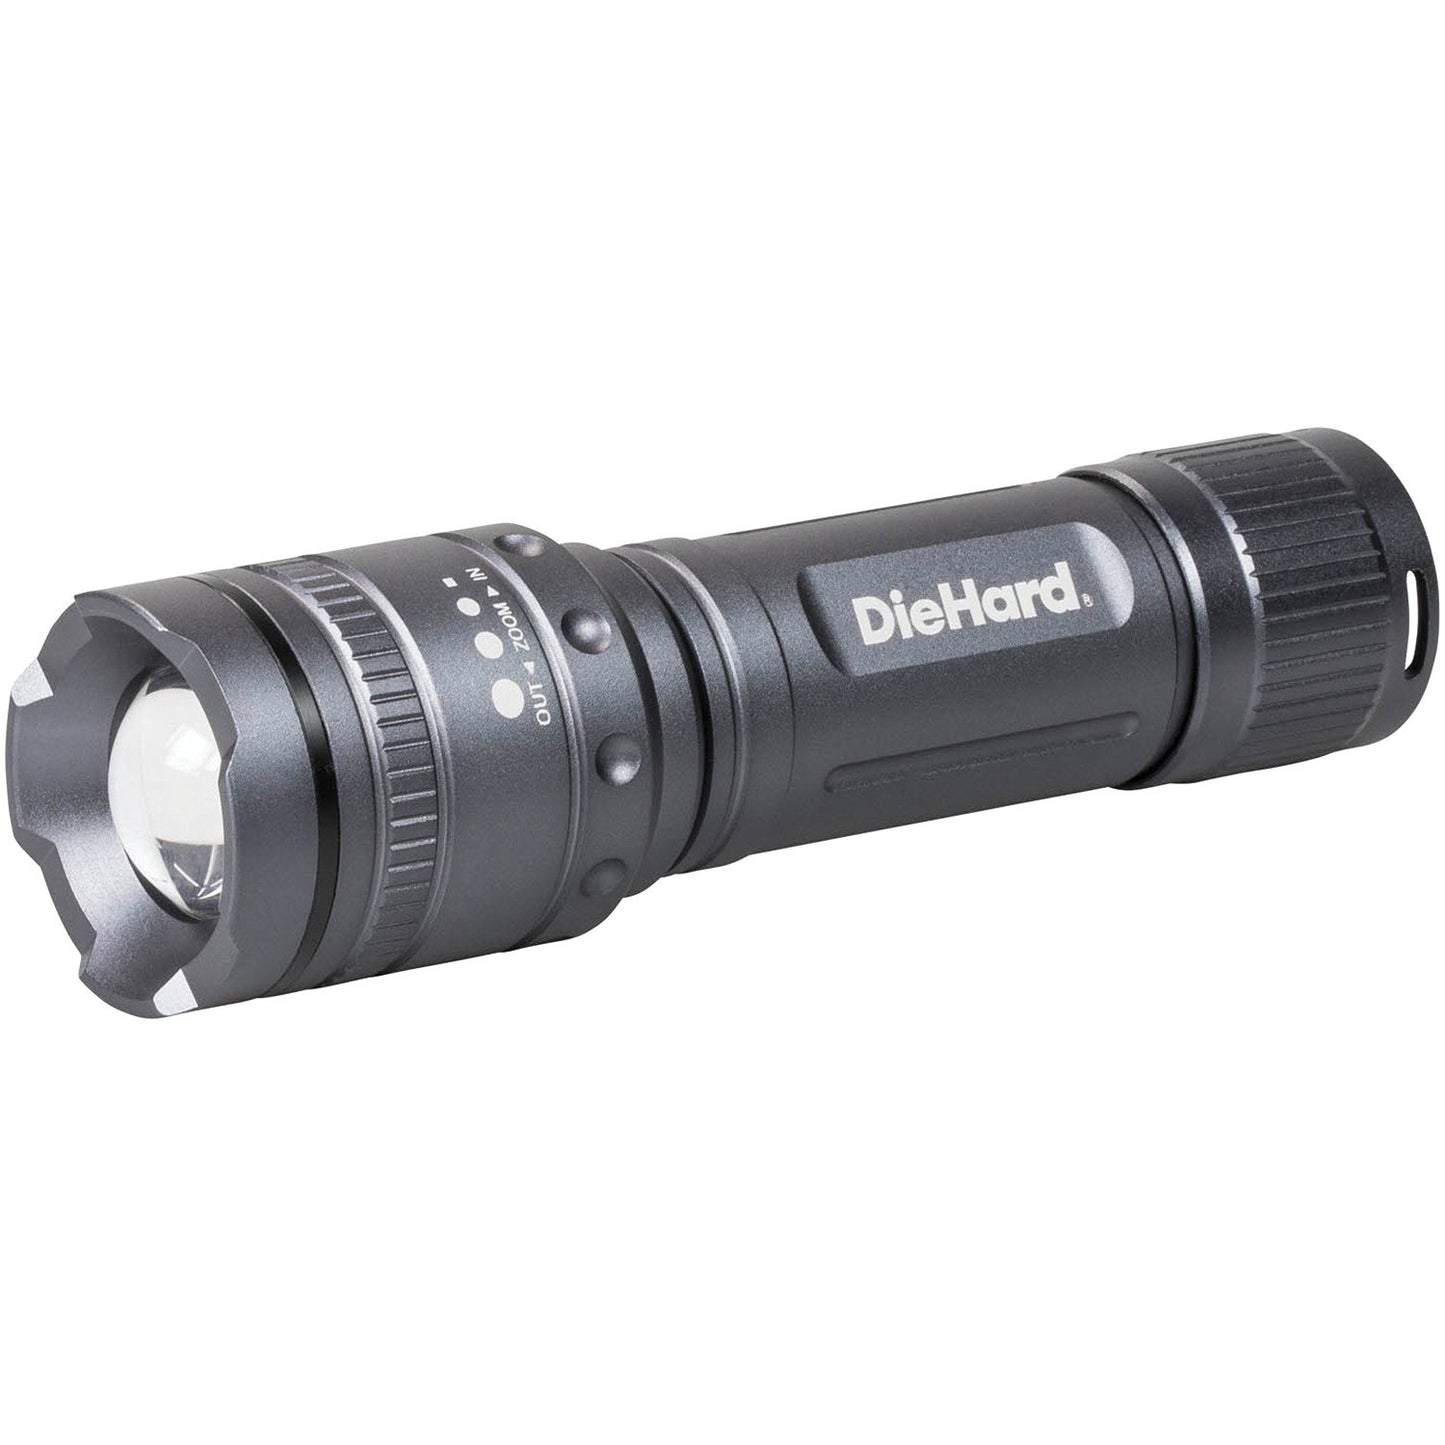 Diehard 41-6121 Twist Focus Flashlight (600-Lumen)